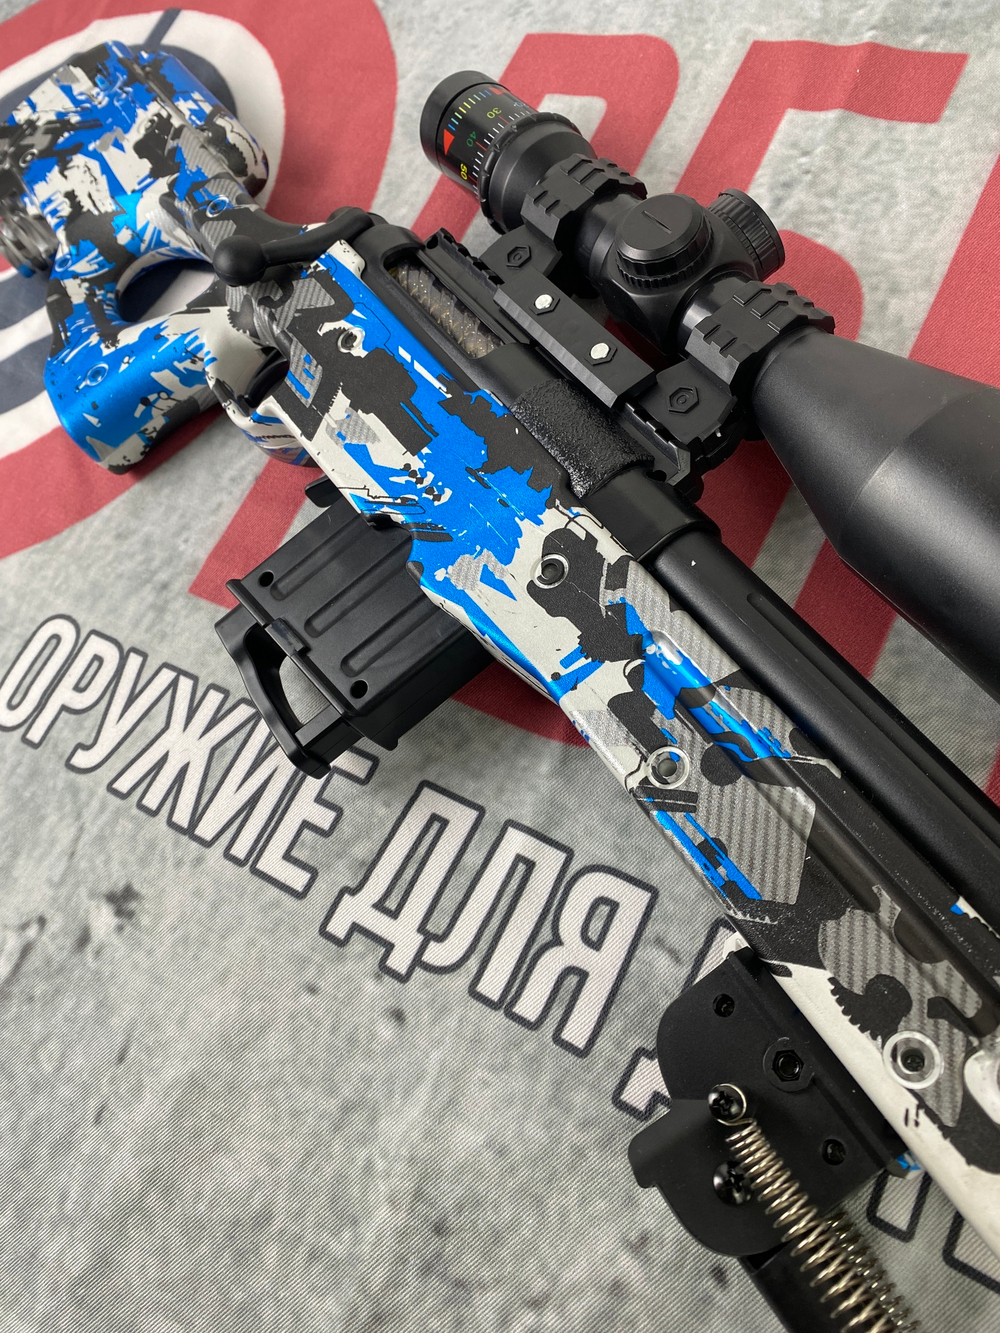 Орбибольная винтовка AWM, синий камуфляж, без аккумулятора